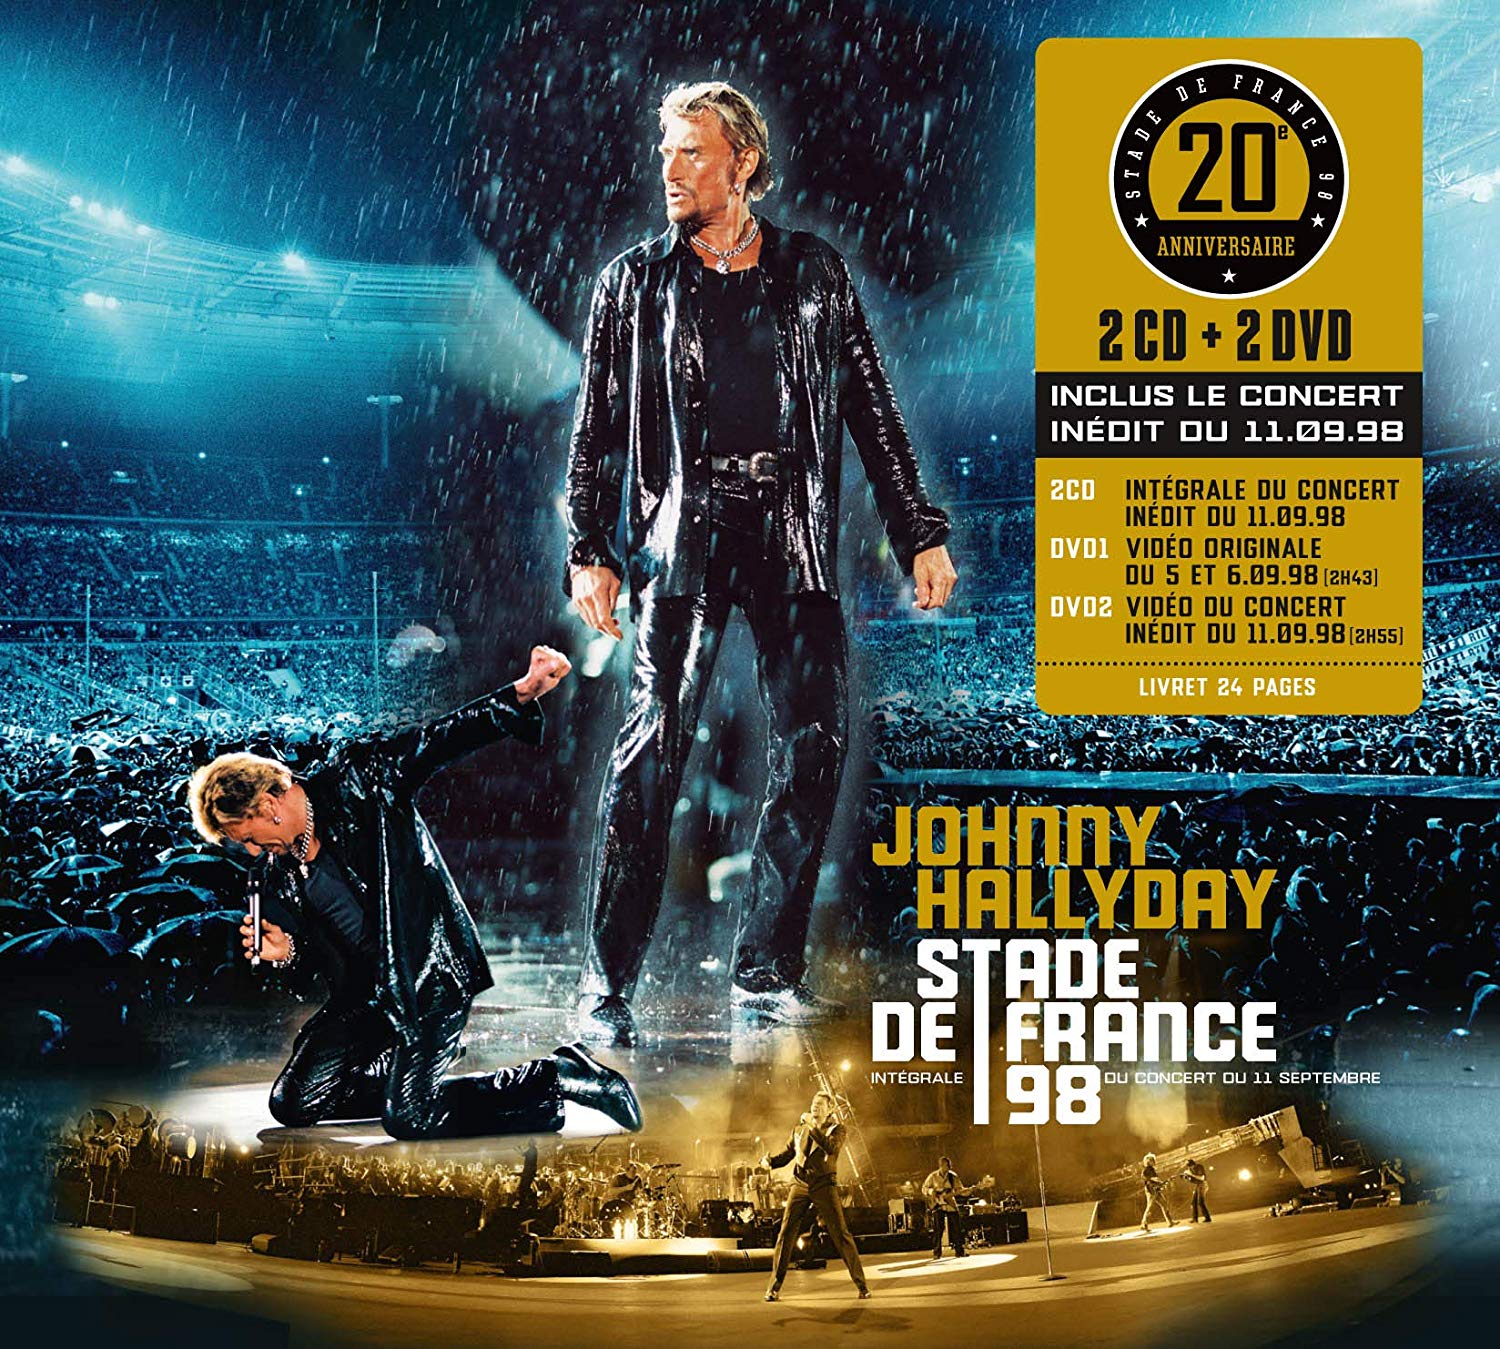 Stade de France 98 - Xxème Anniversaire